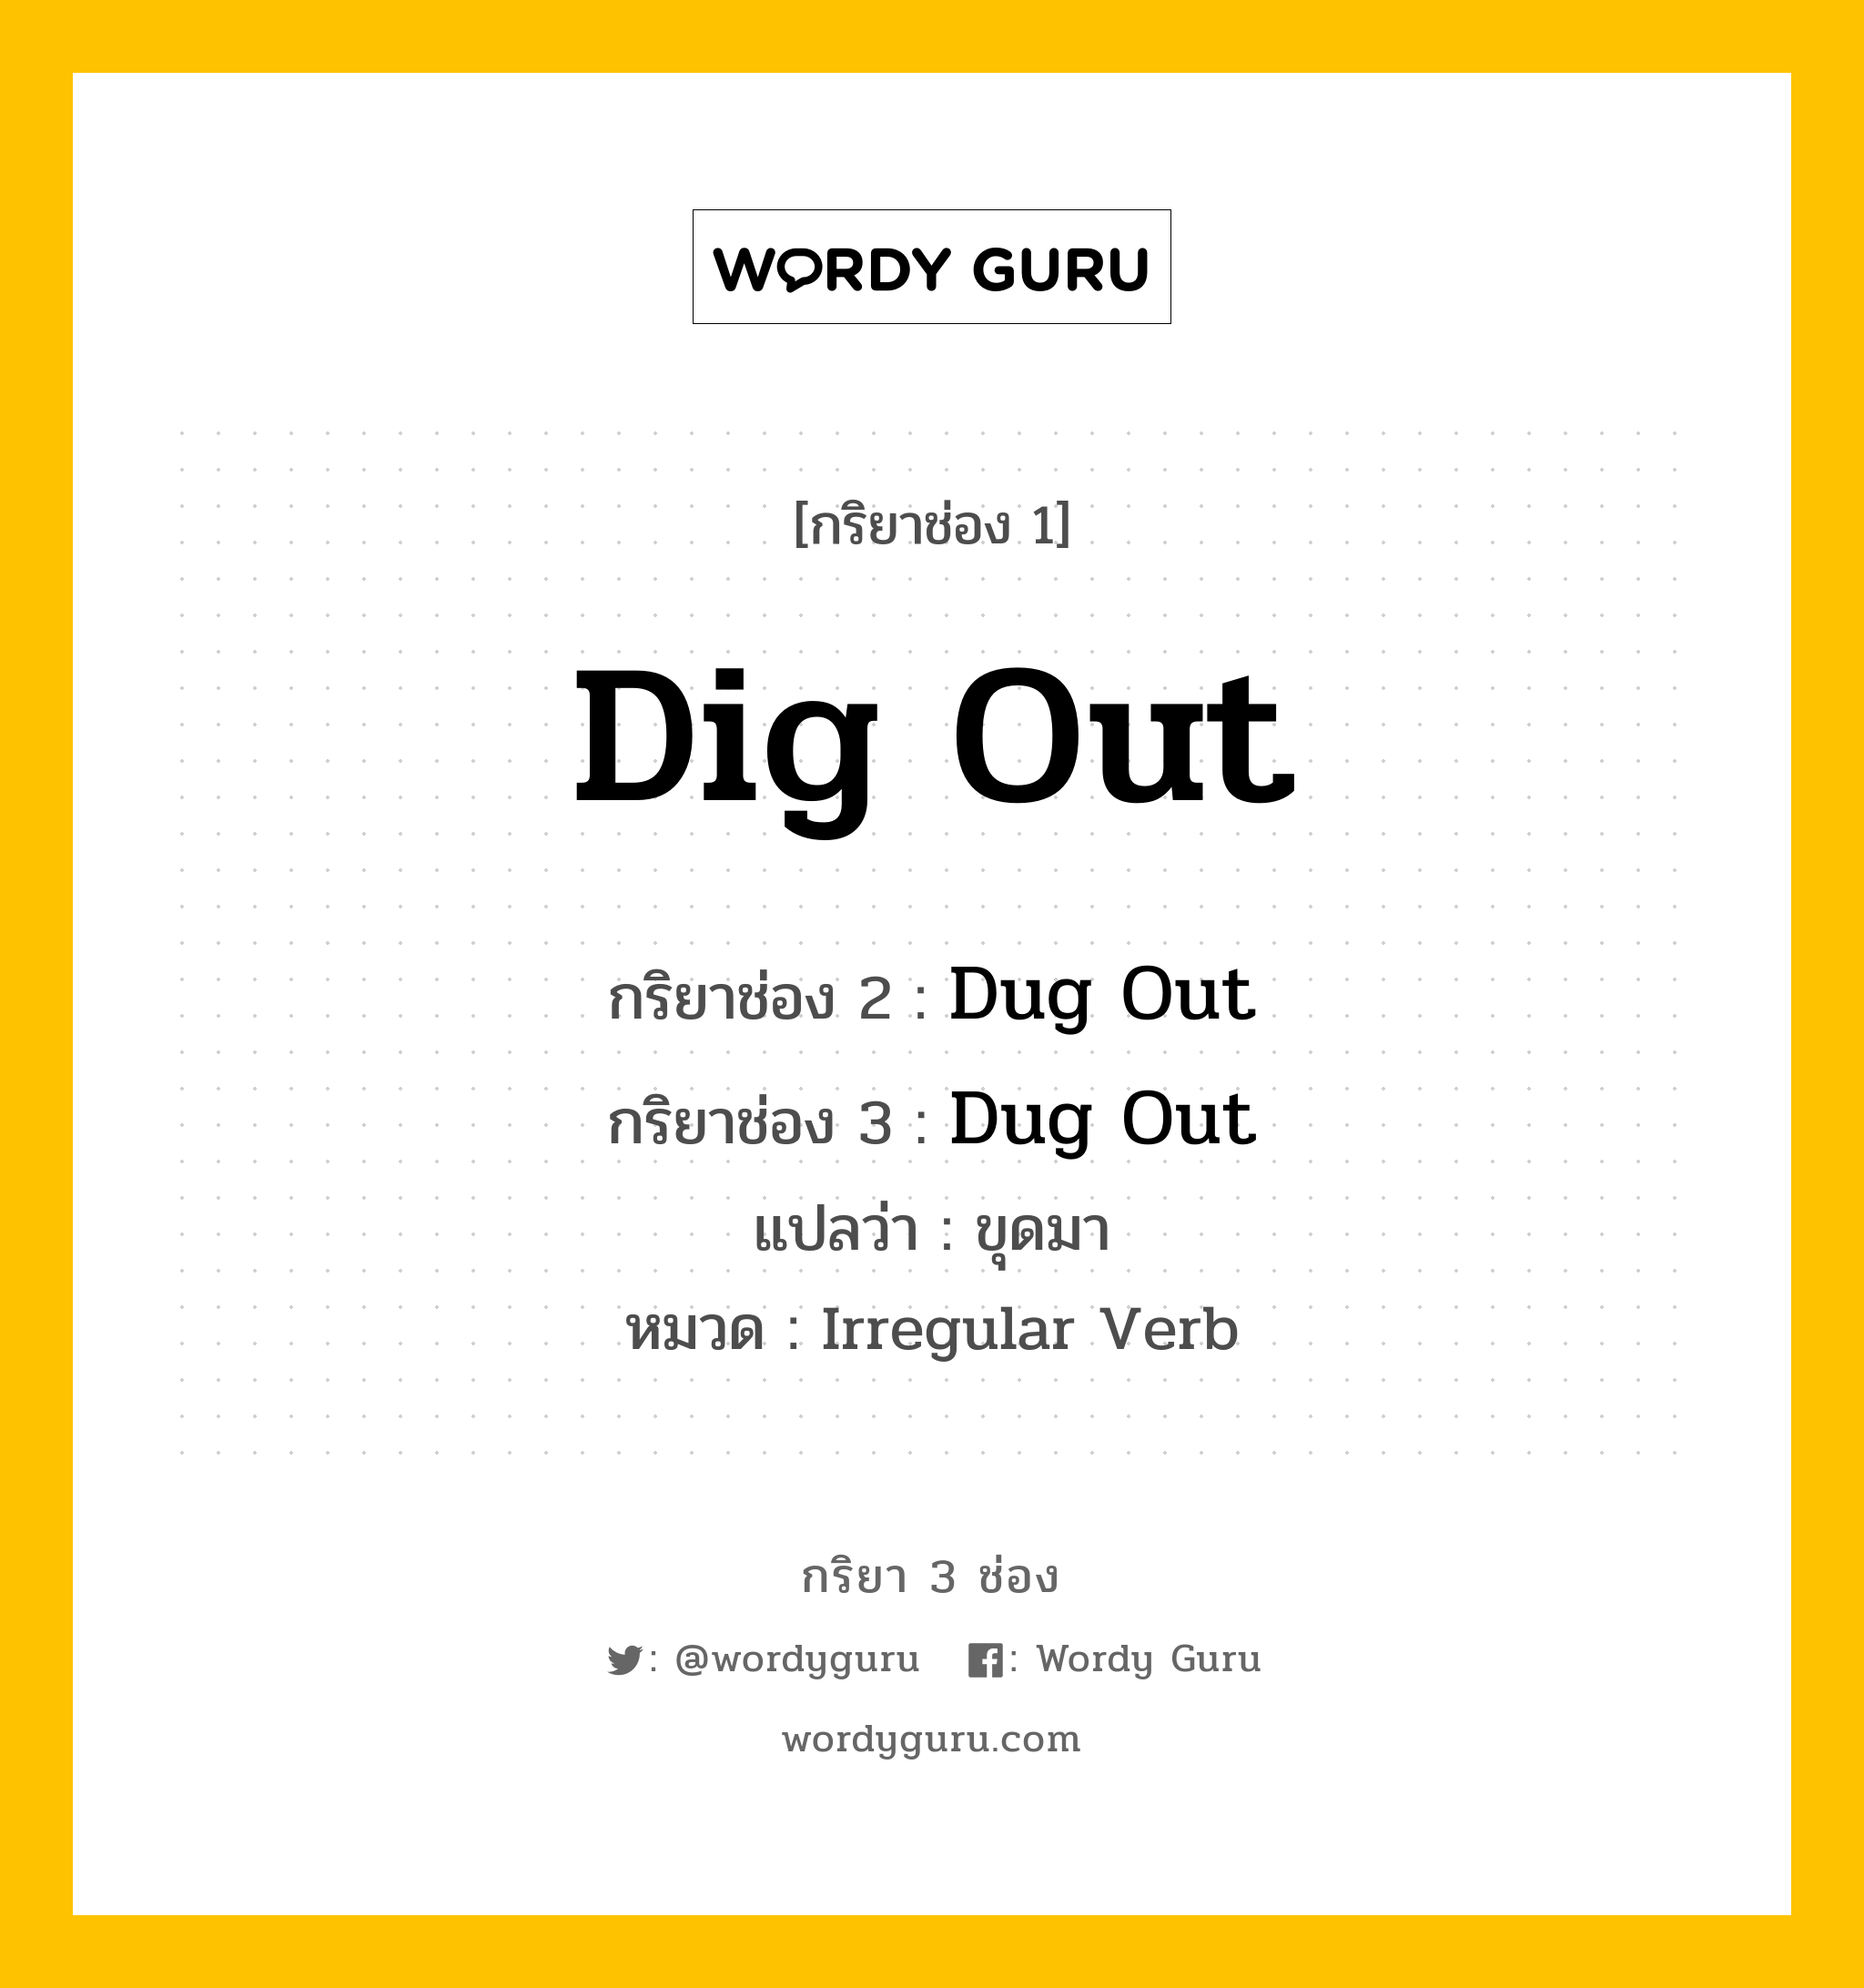 กริยา 3 ช่อง: Dig Out ช่อง 2 Dig Out ช่อง 3 คืออะไร, กริยาช่อง 1 Dig Out กริยาช่อง 2 Dug Out กริยาช่อง 3 Dug Out แปลว่า ขุดมา หมวด Irregular Verb หมวด Irregular Verb